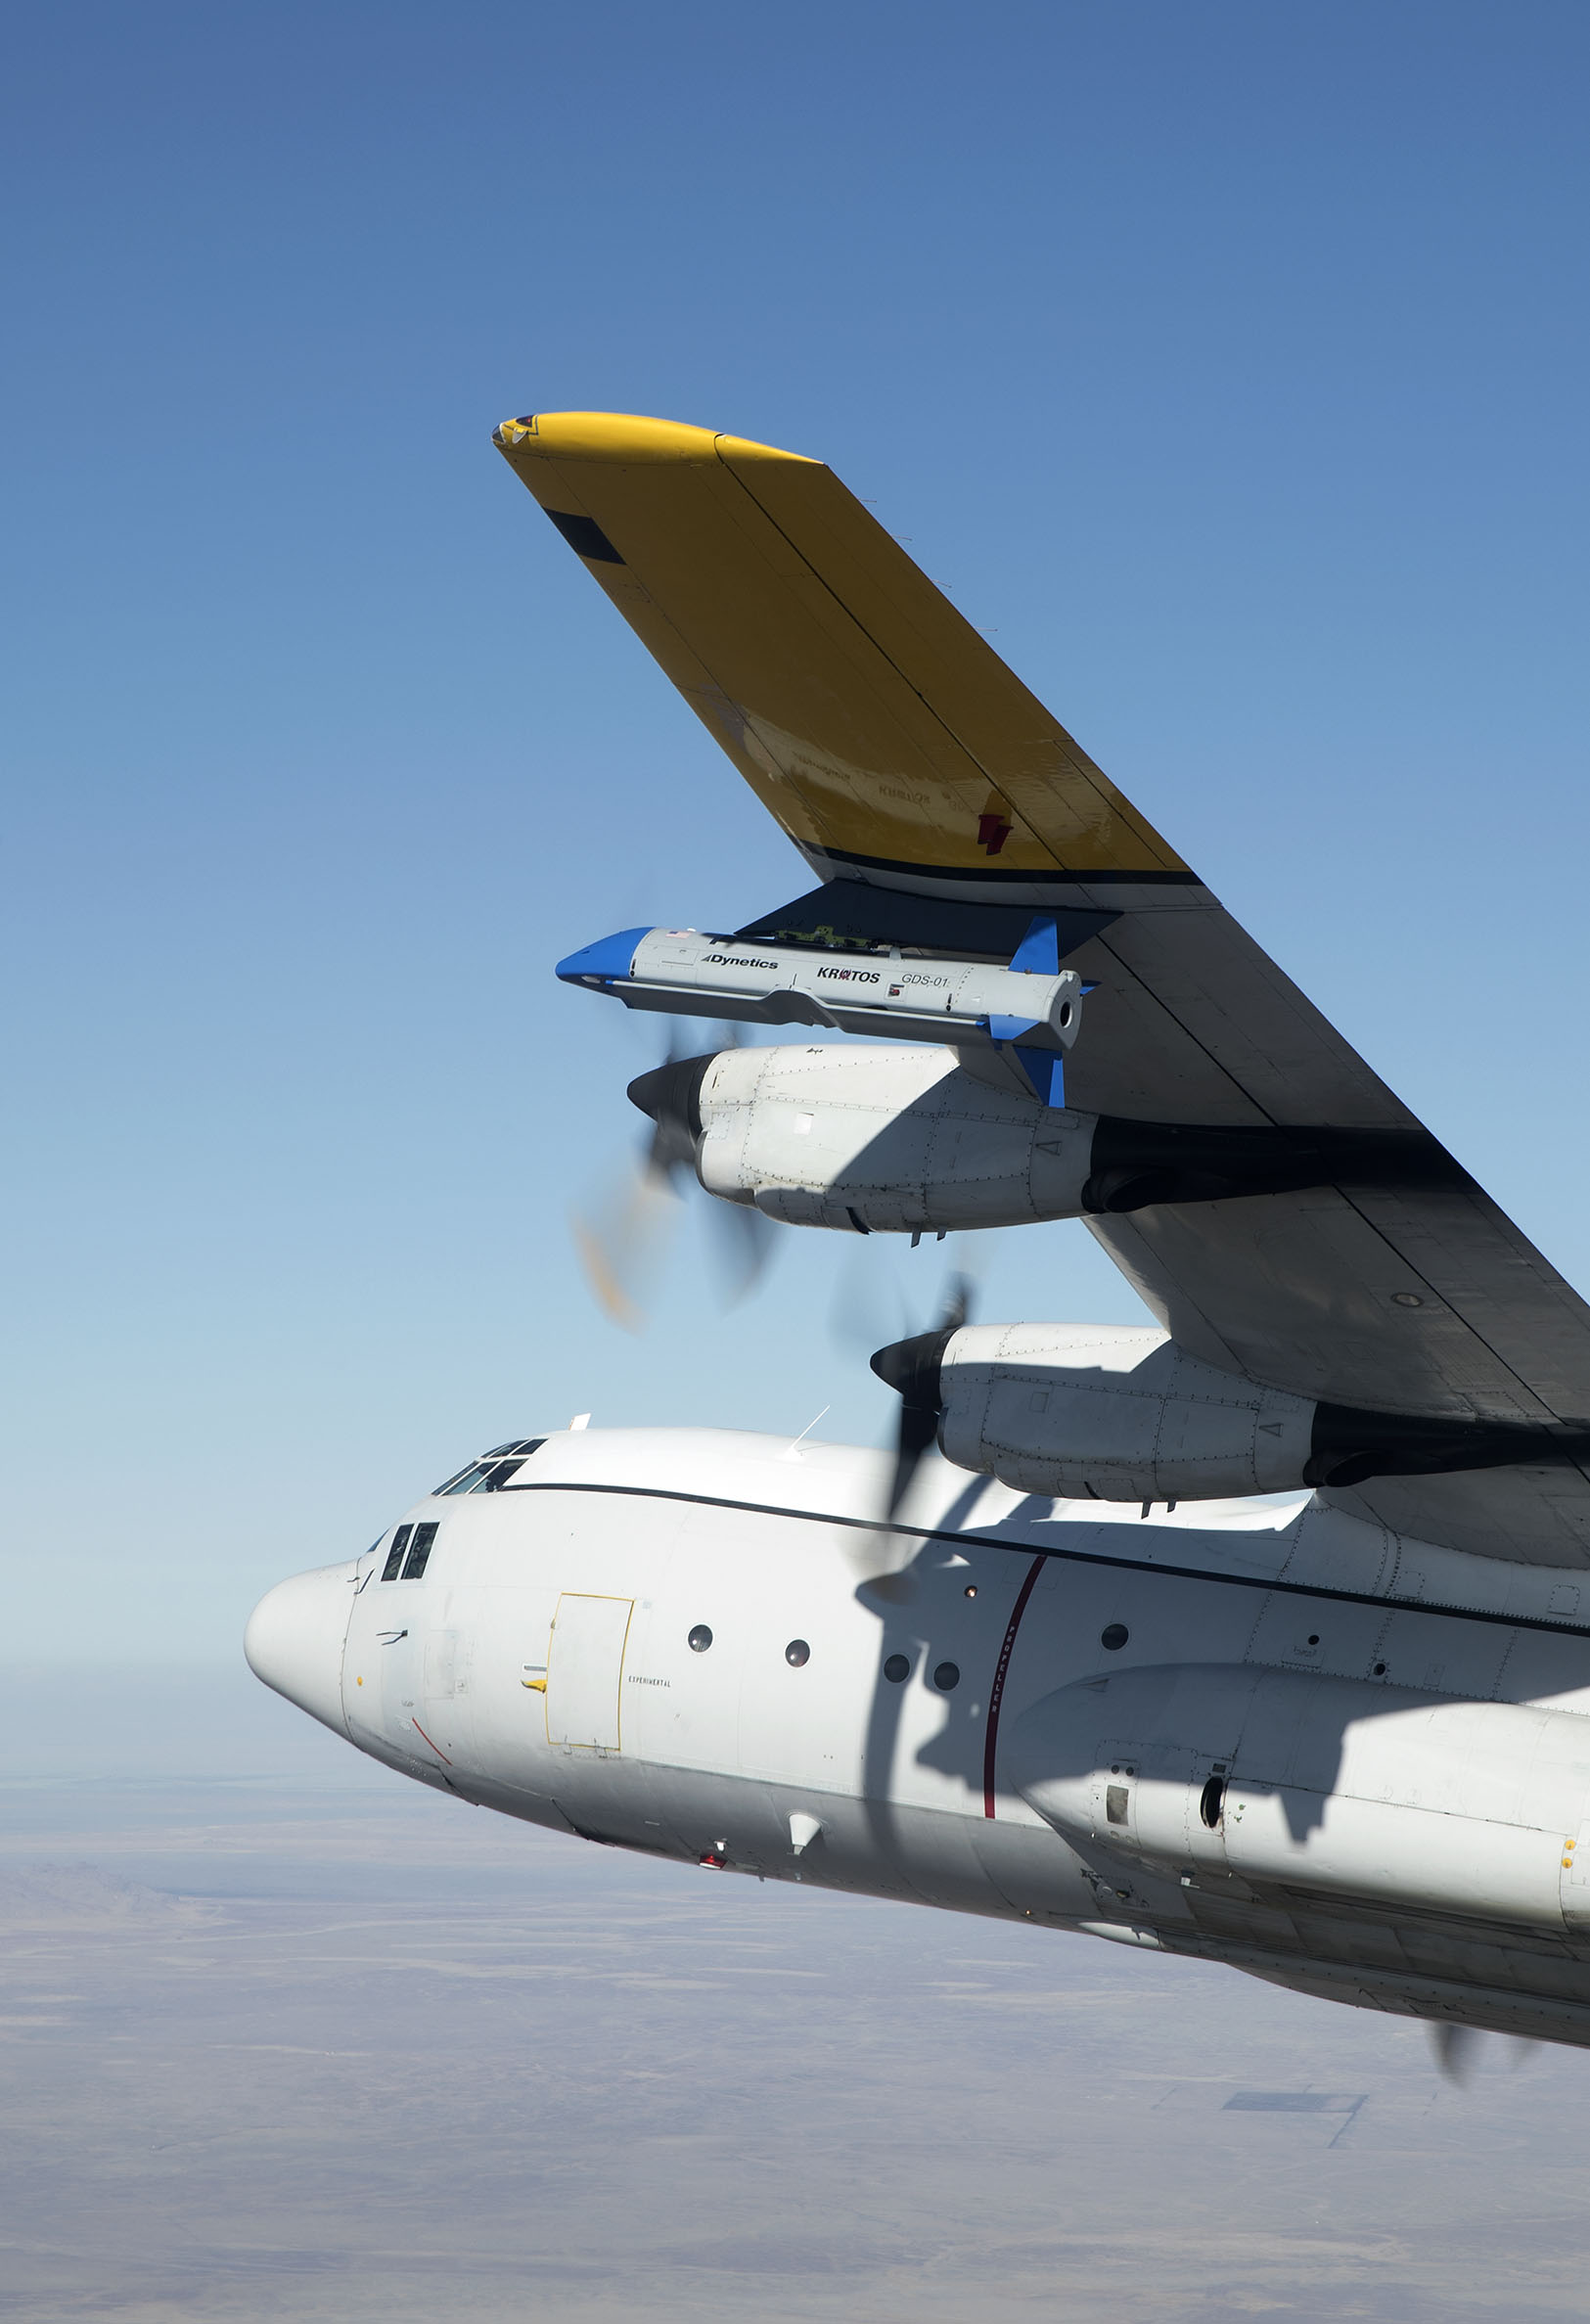 آژانس تحقیقات و توسعه تکنولوژی های پیشرفته پنتاگون اولین پرواز پهپاد X-61A ملقب به «گرملین» (Gremlin) را به انجام رسانده است